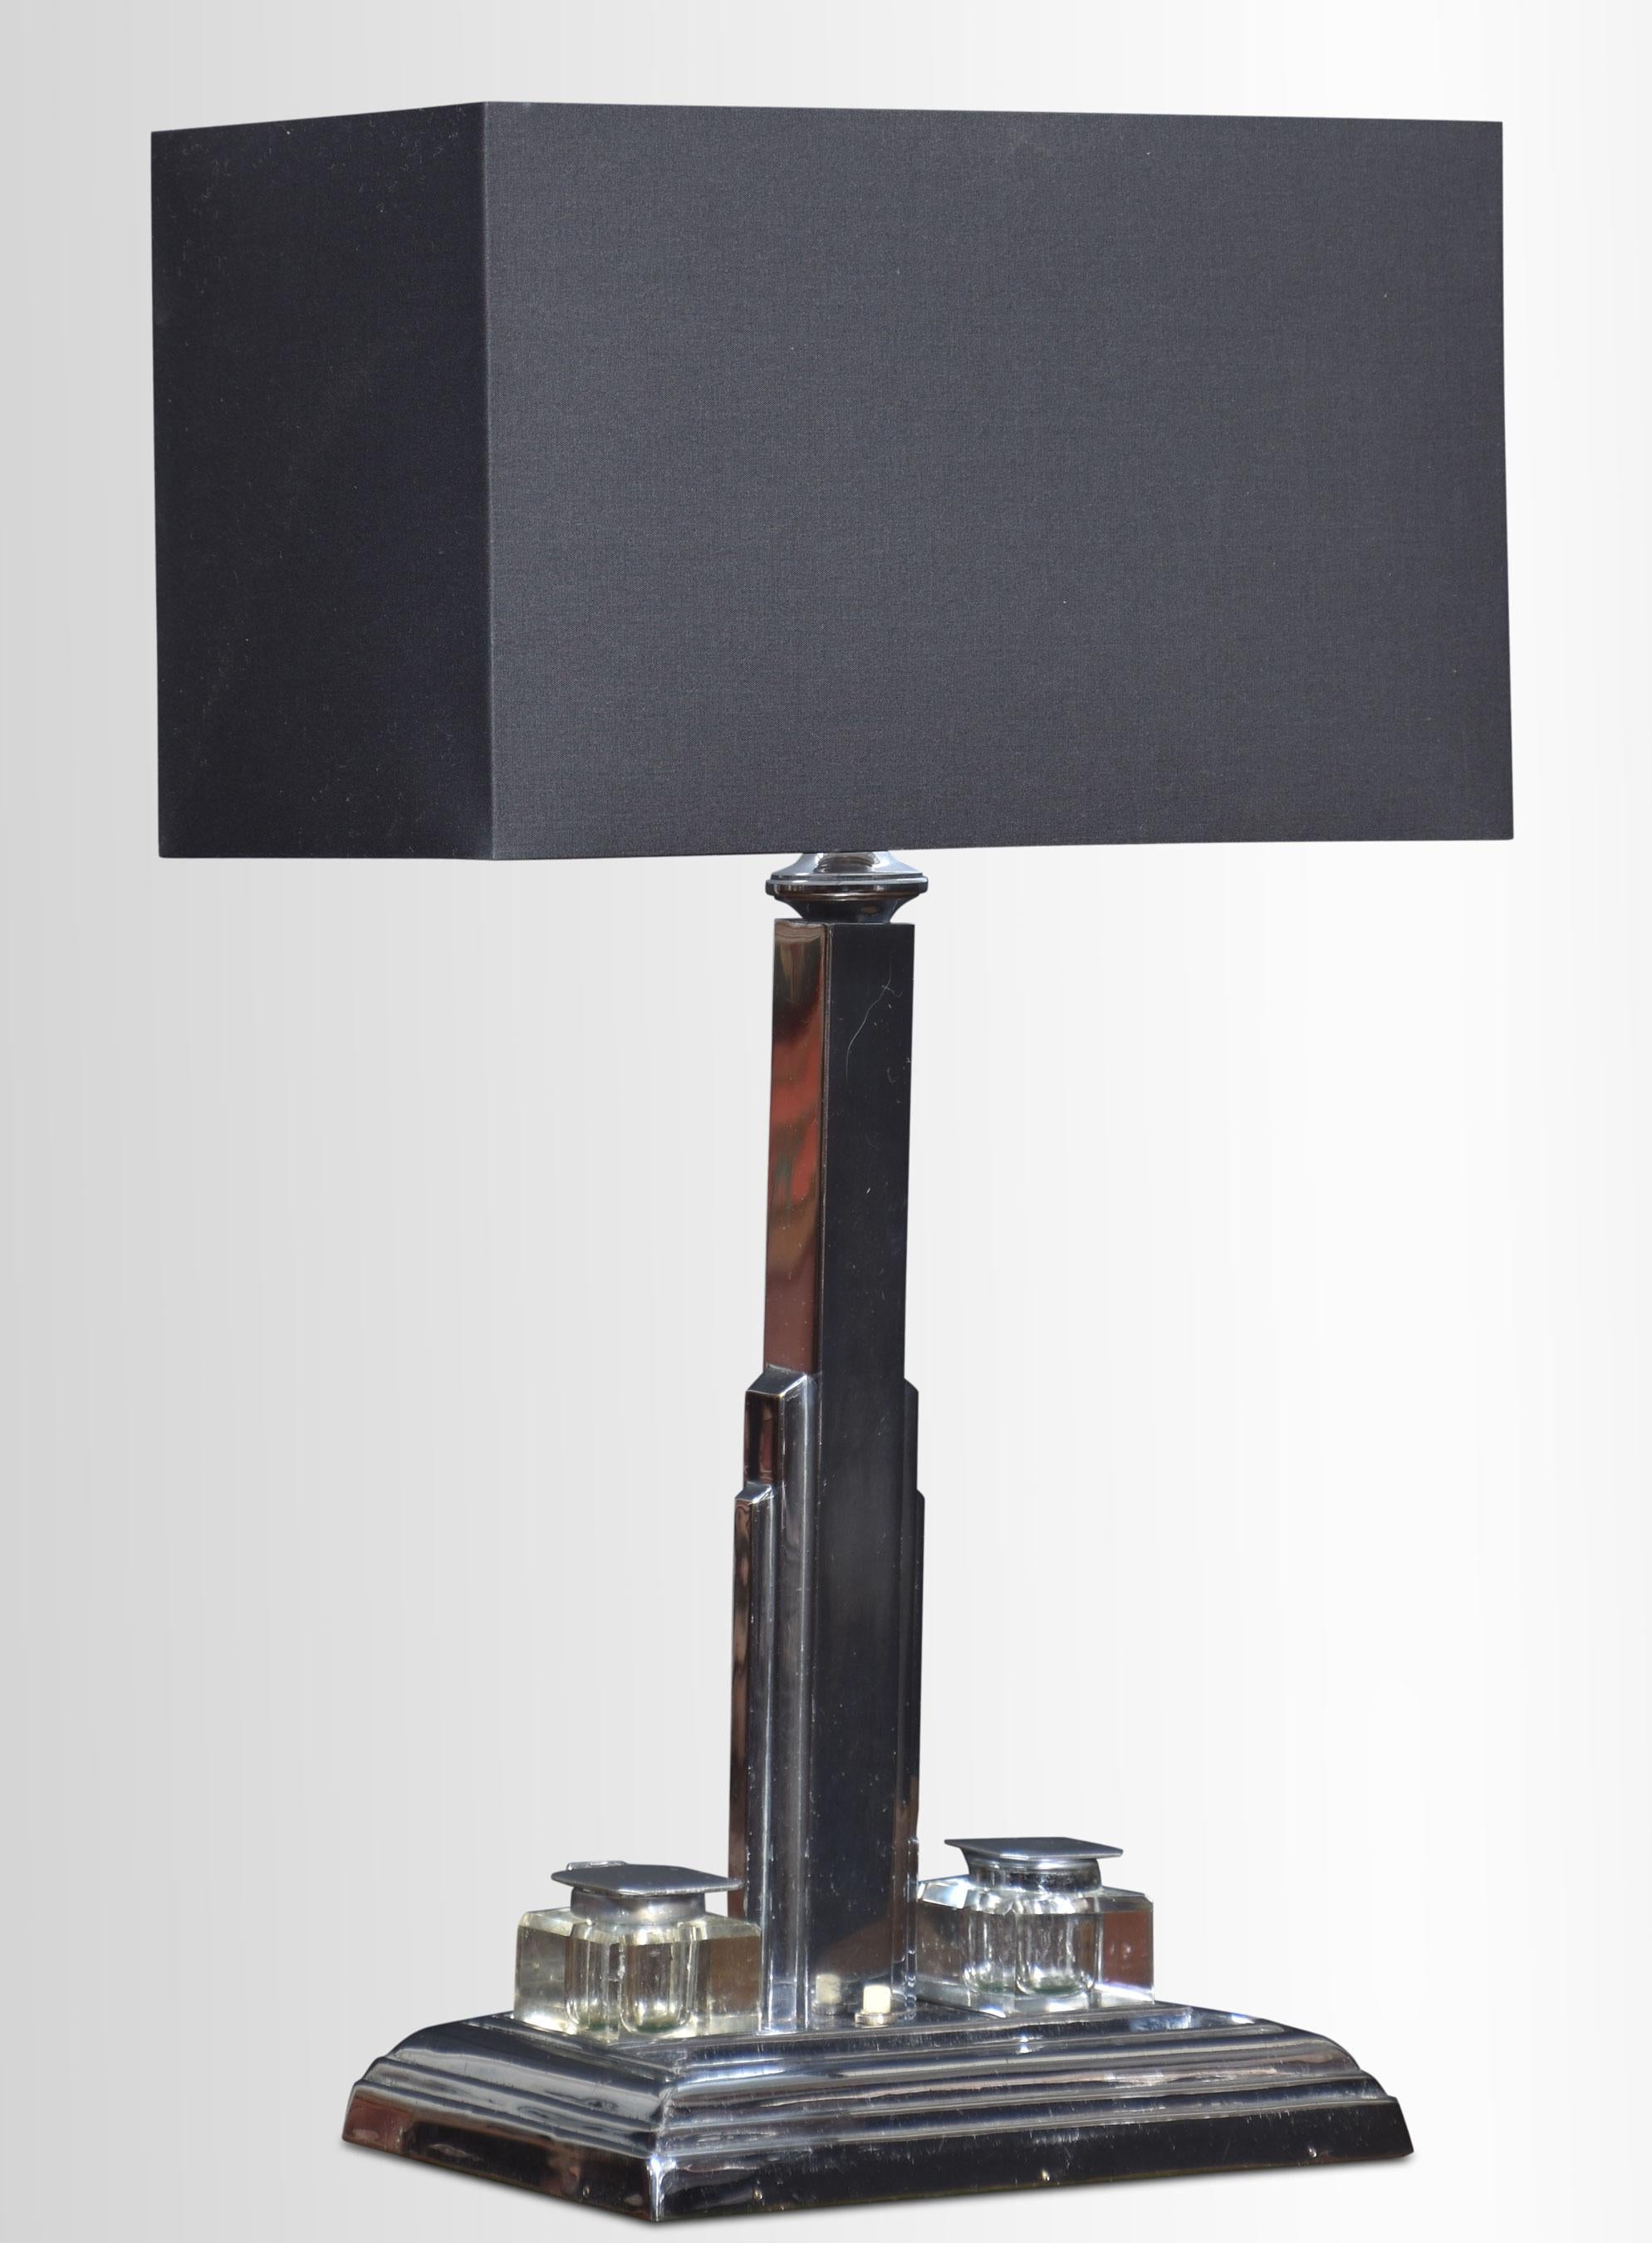 Lampe de bureau Art Déco en chrome, dont la tige carrée est soutenue par une base rectangulaire avec des encriers encastrés et un porte-stylo.
Dimensions
Hauteur 19 pouces
Largeur 11,5 pouces
Profondeur 6 pouces